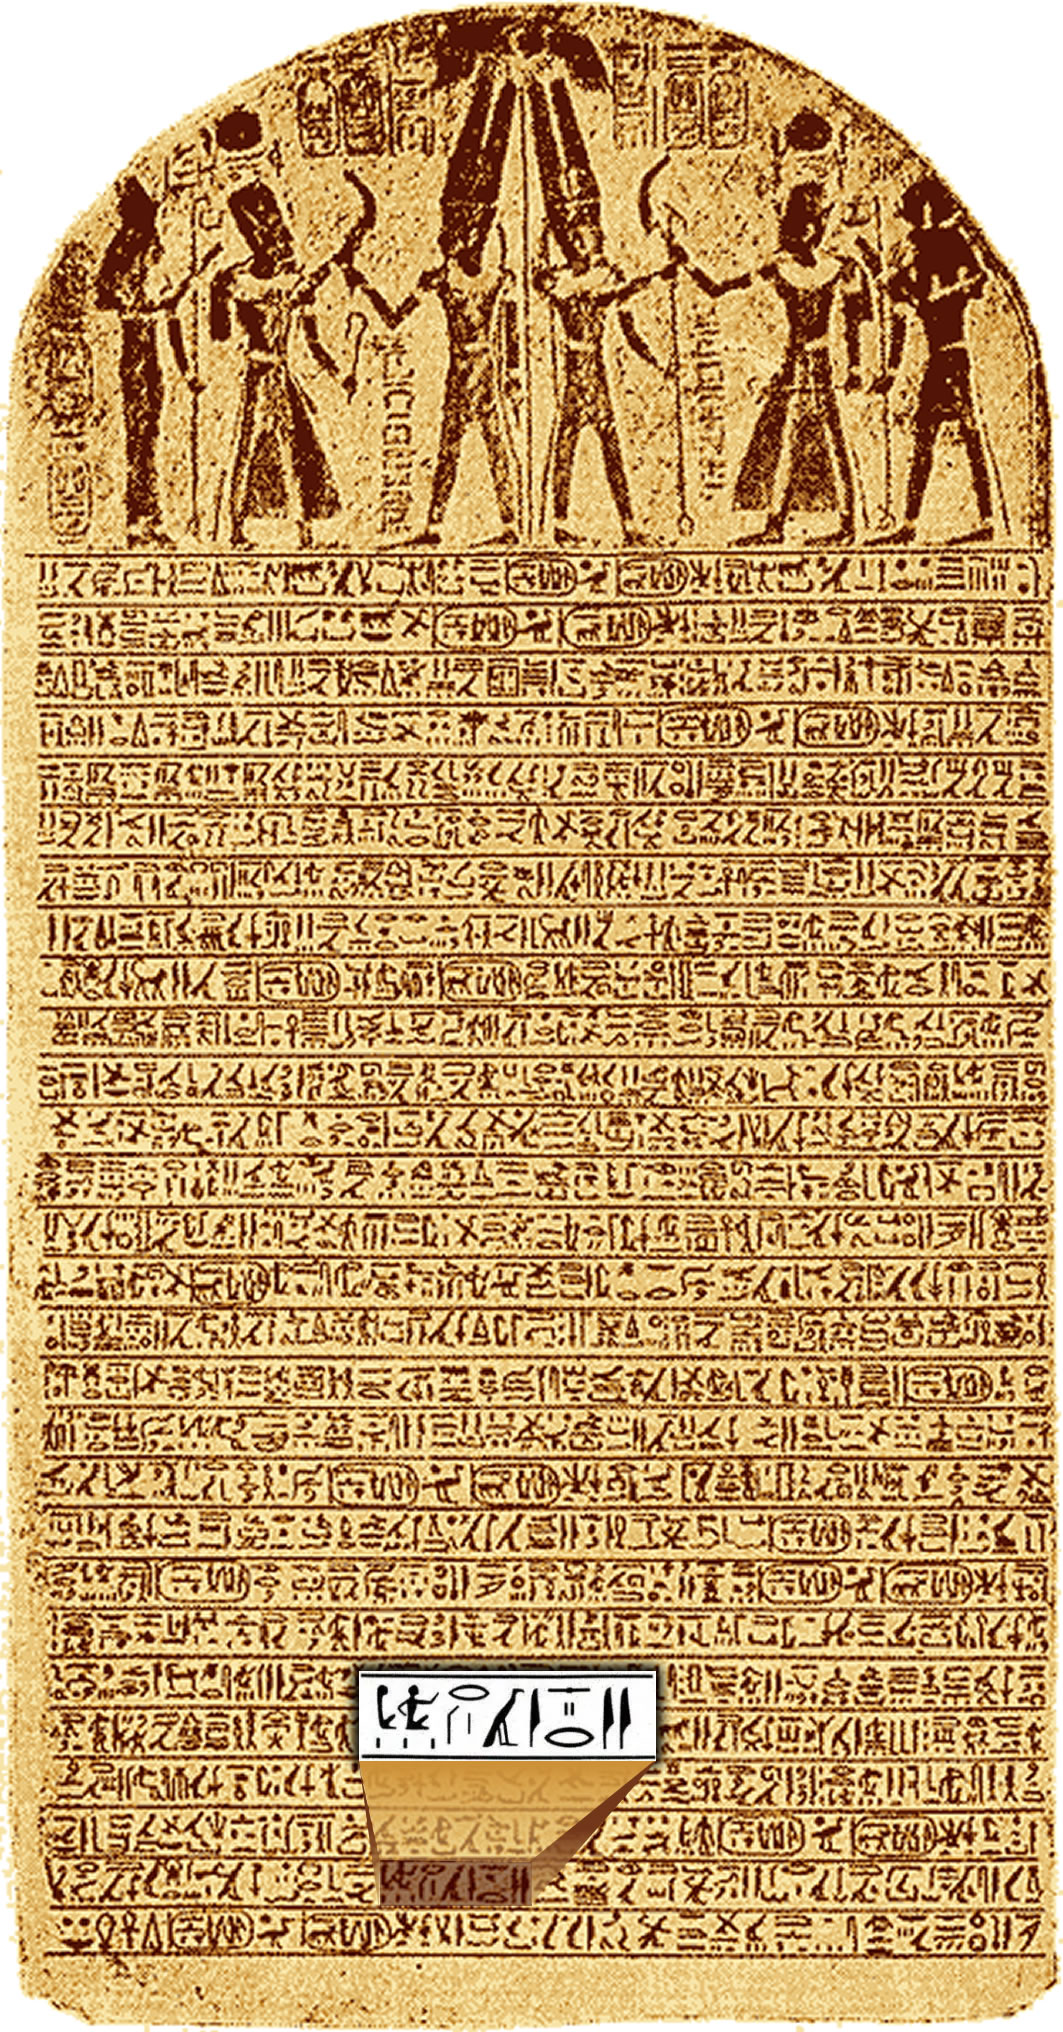 La mención más antigua de Israel en la Historia: La estela de Merenptah